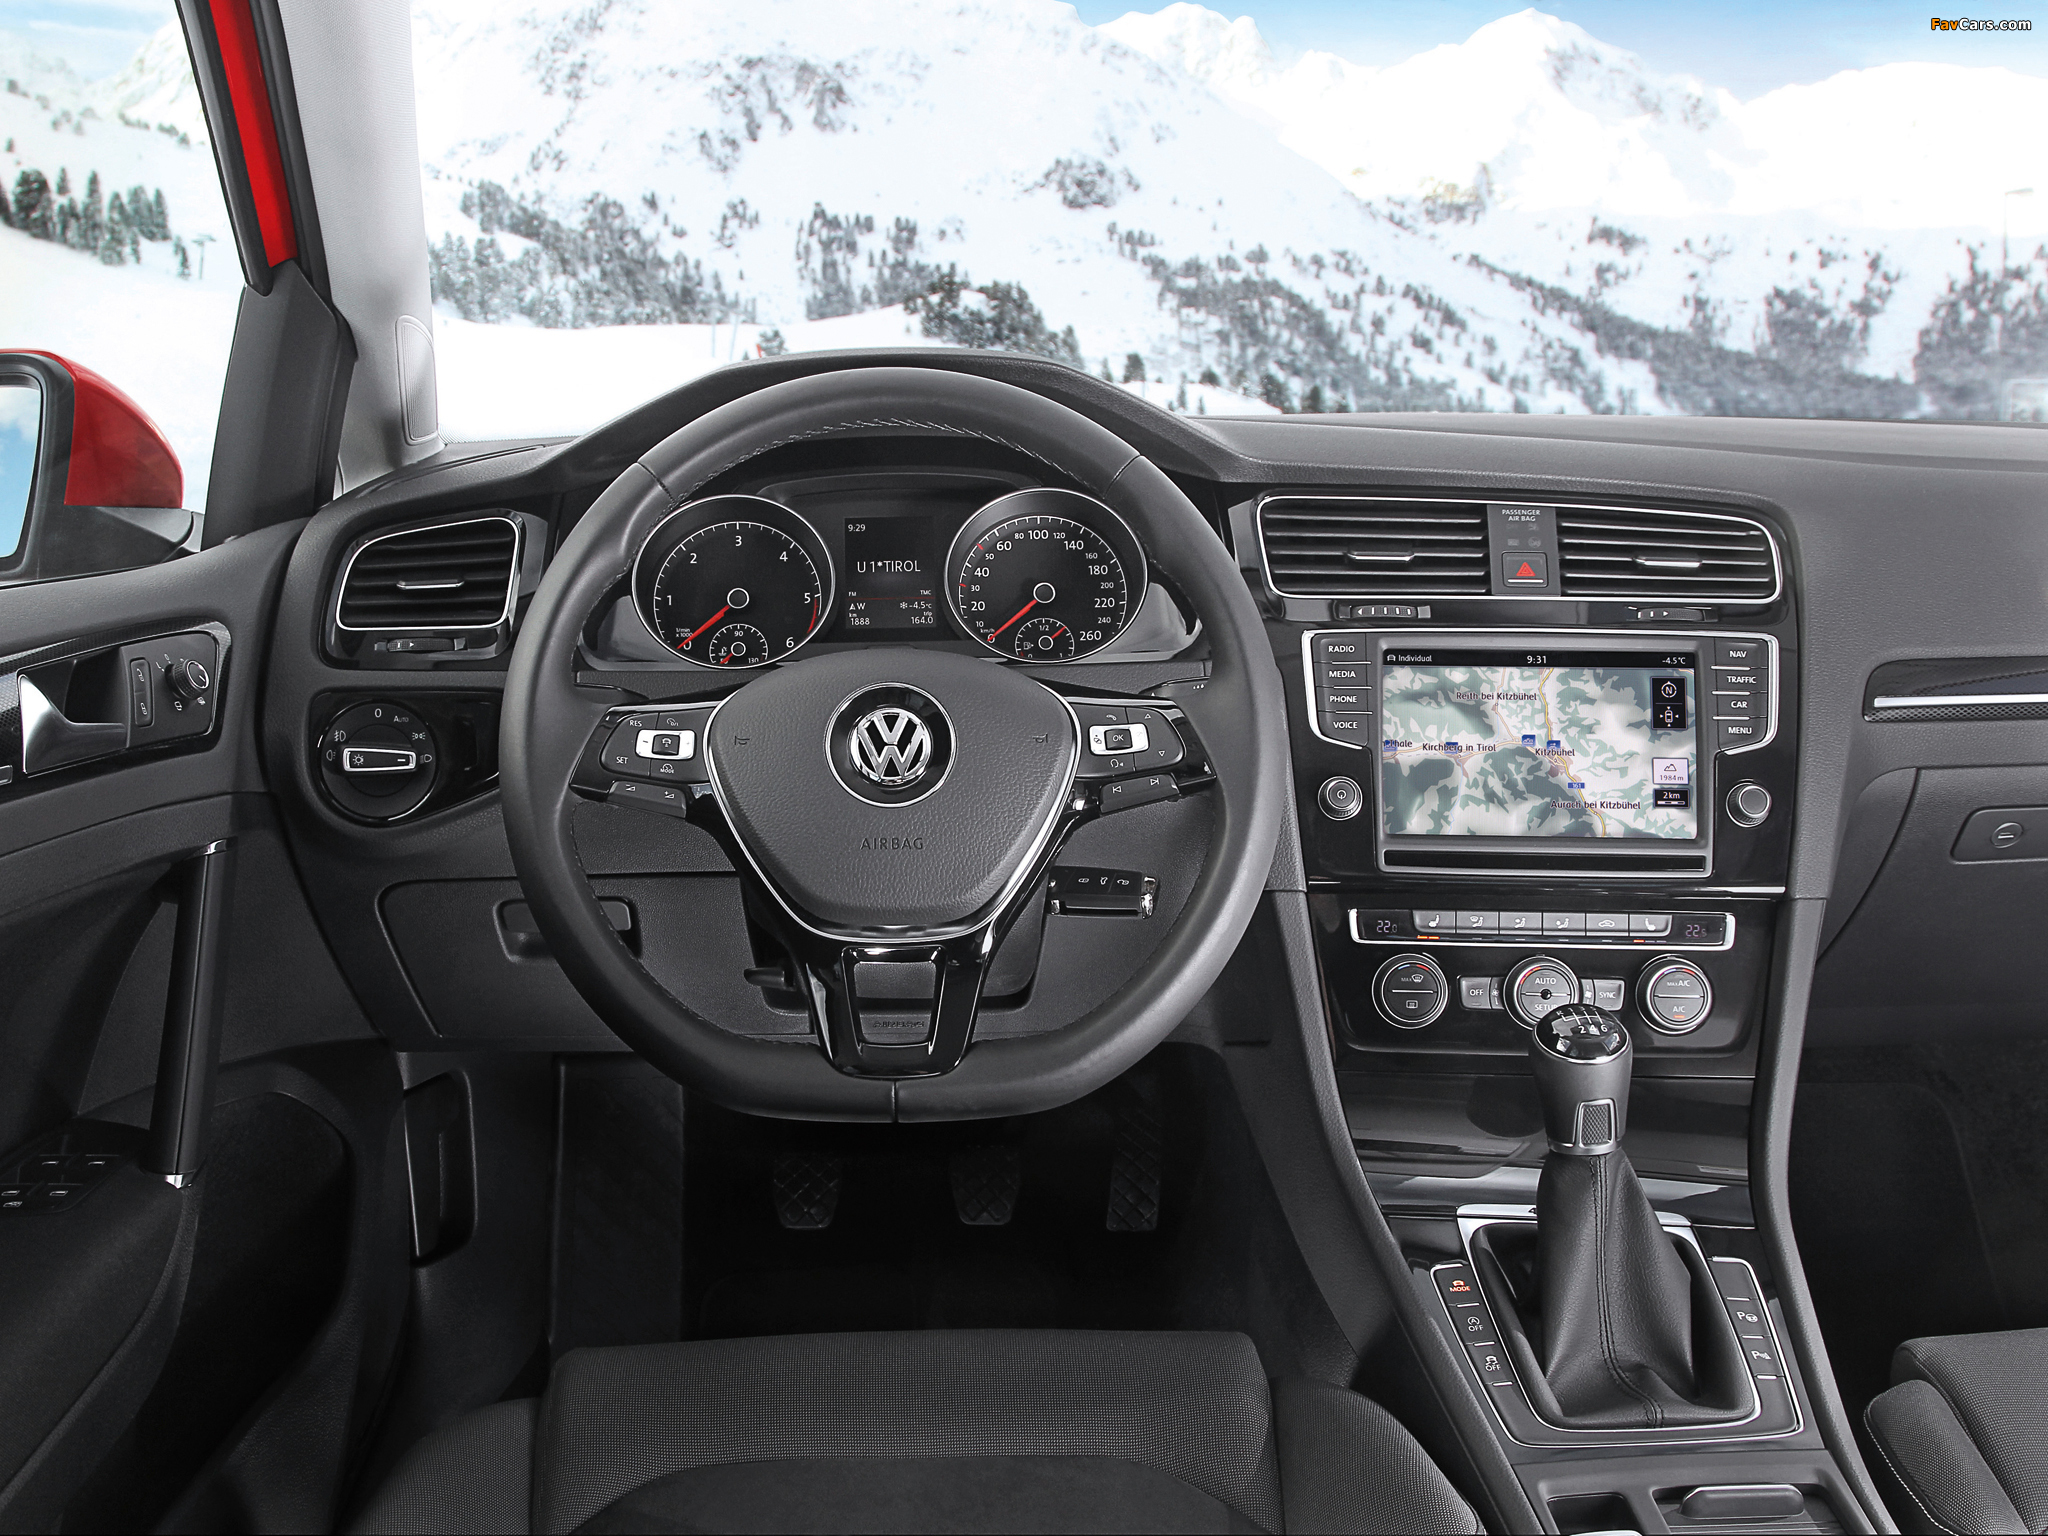 Volkswagen Golf TDI 4MOTION 5-door (Typ 5G) 2013 images (2048 x 1536)